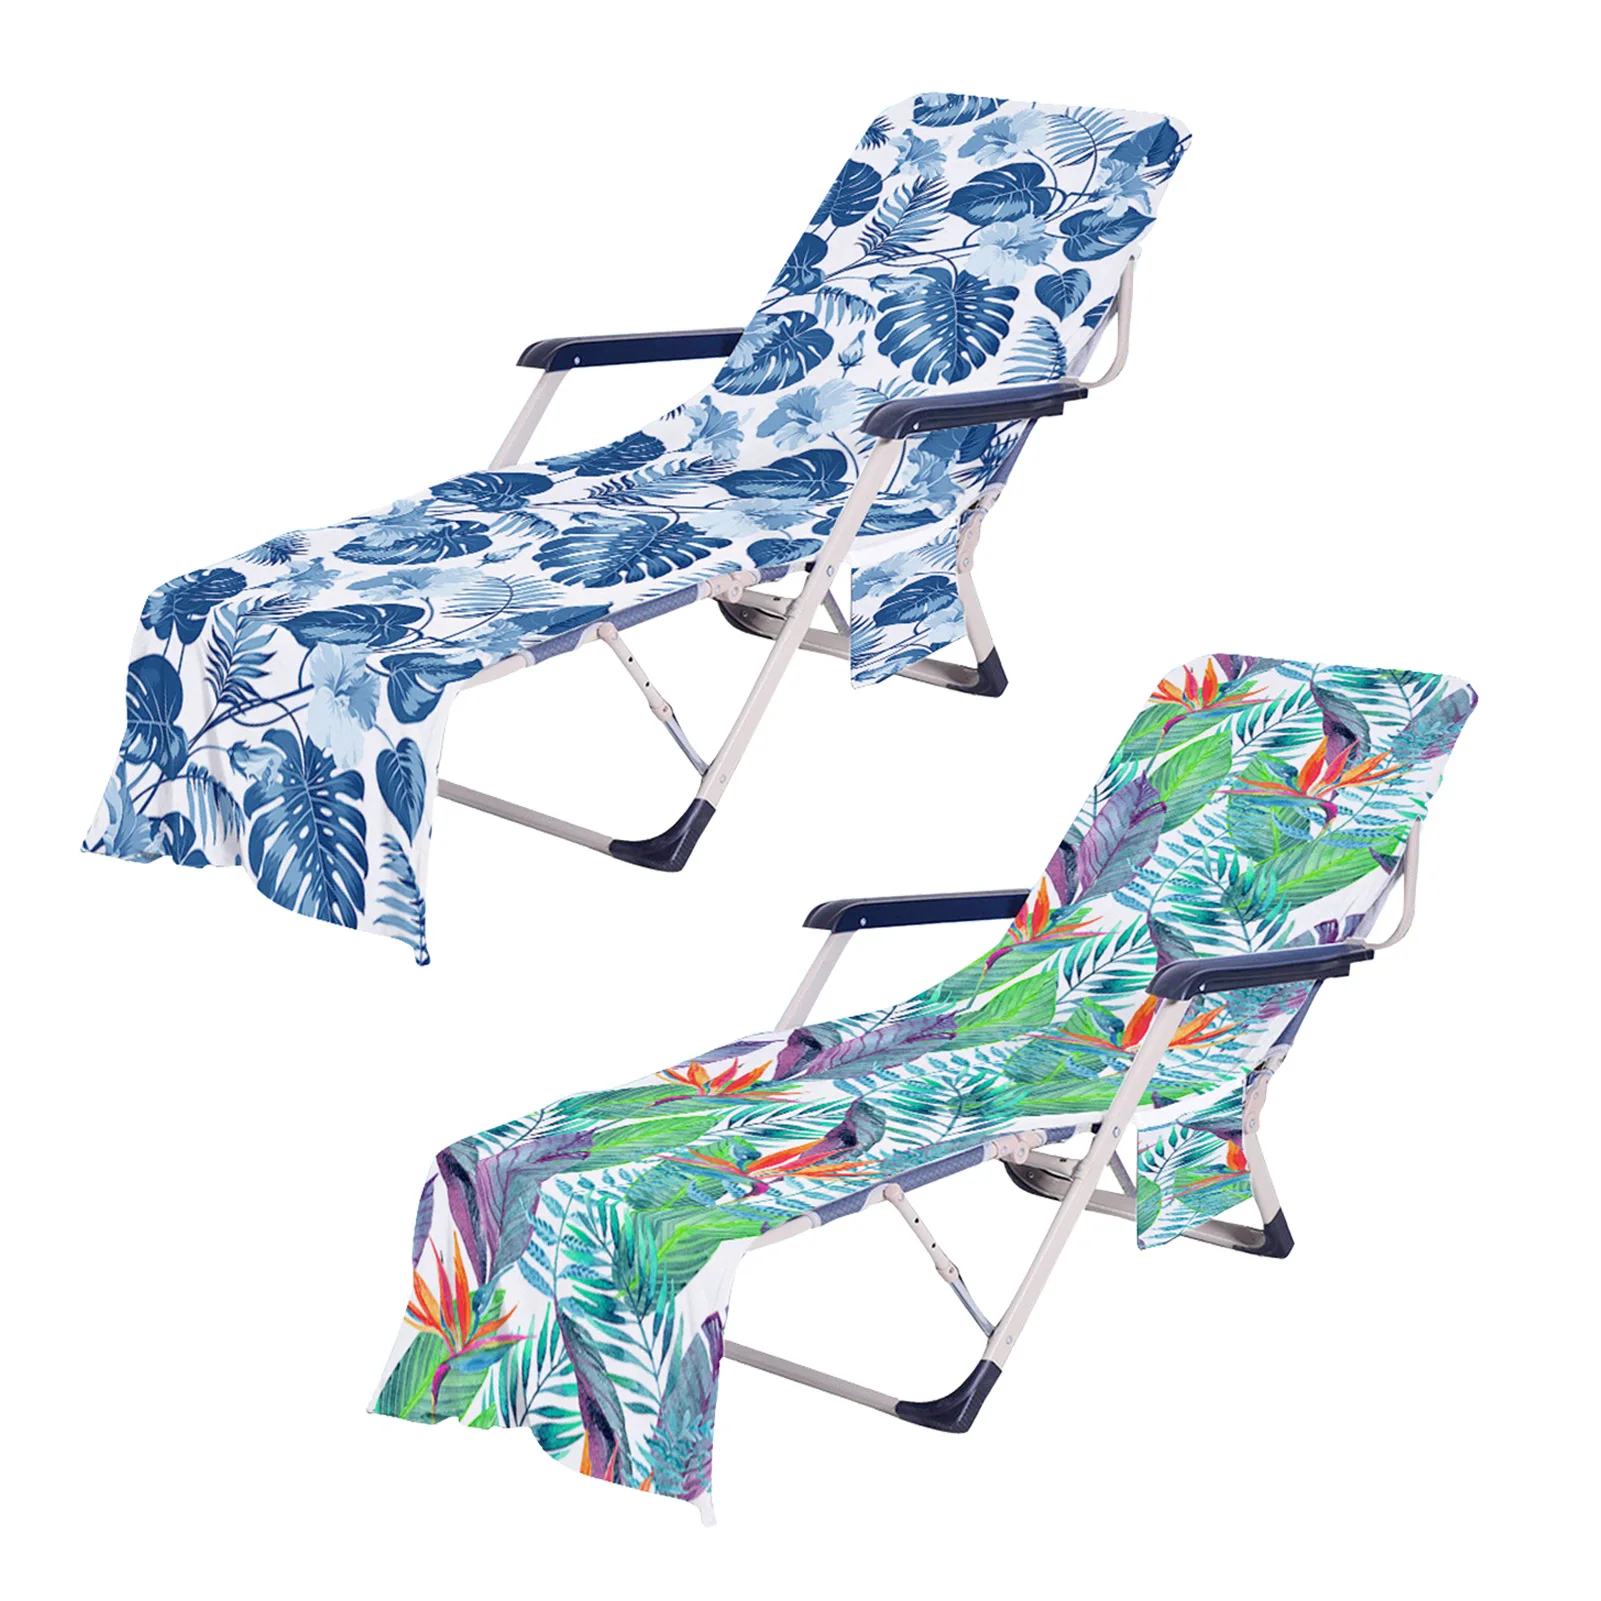 

Летнее пляжное полотенце на стул, пляжное полотенце на длинном ремешке, полотенце на стул, чехол с карманом для улицы, сада, пляжа, бассейна, ...